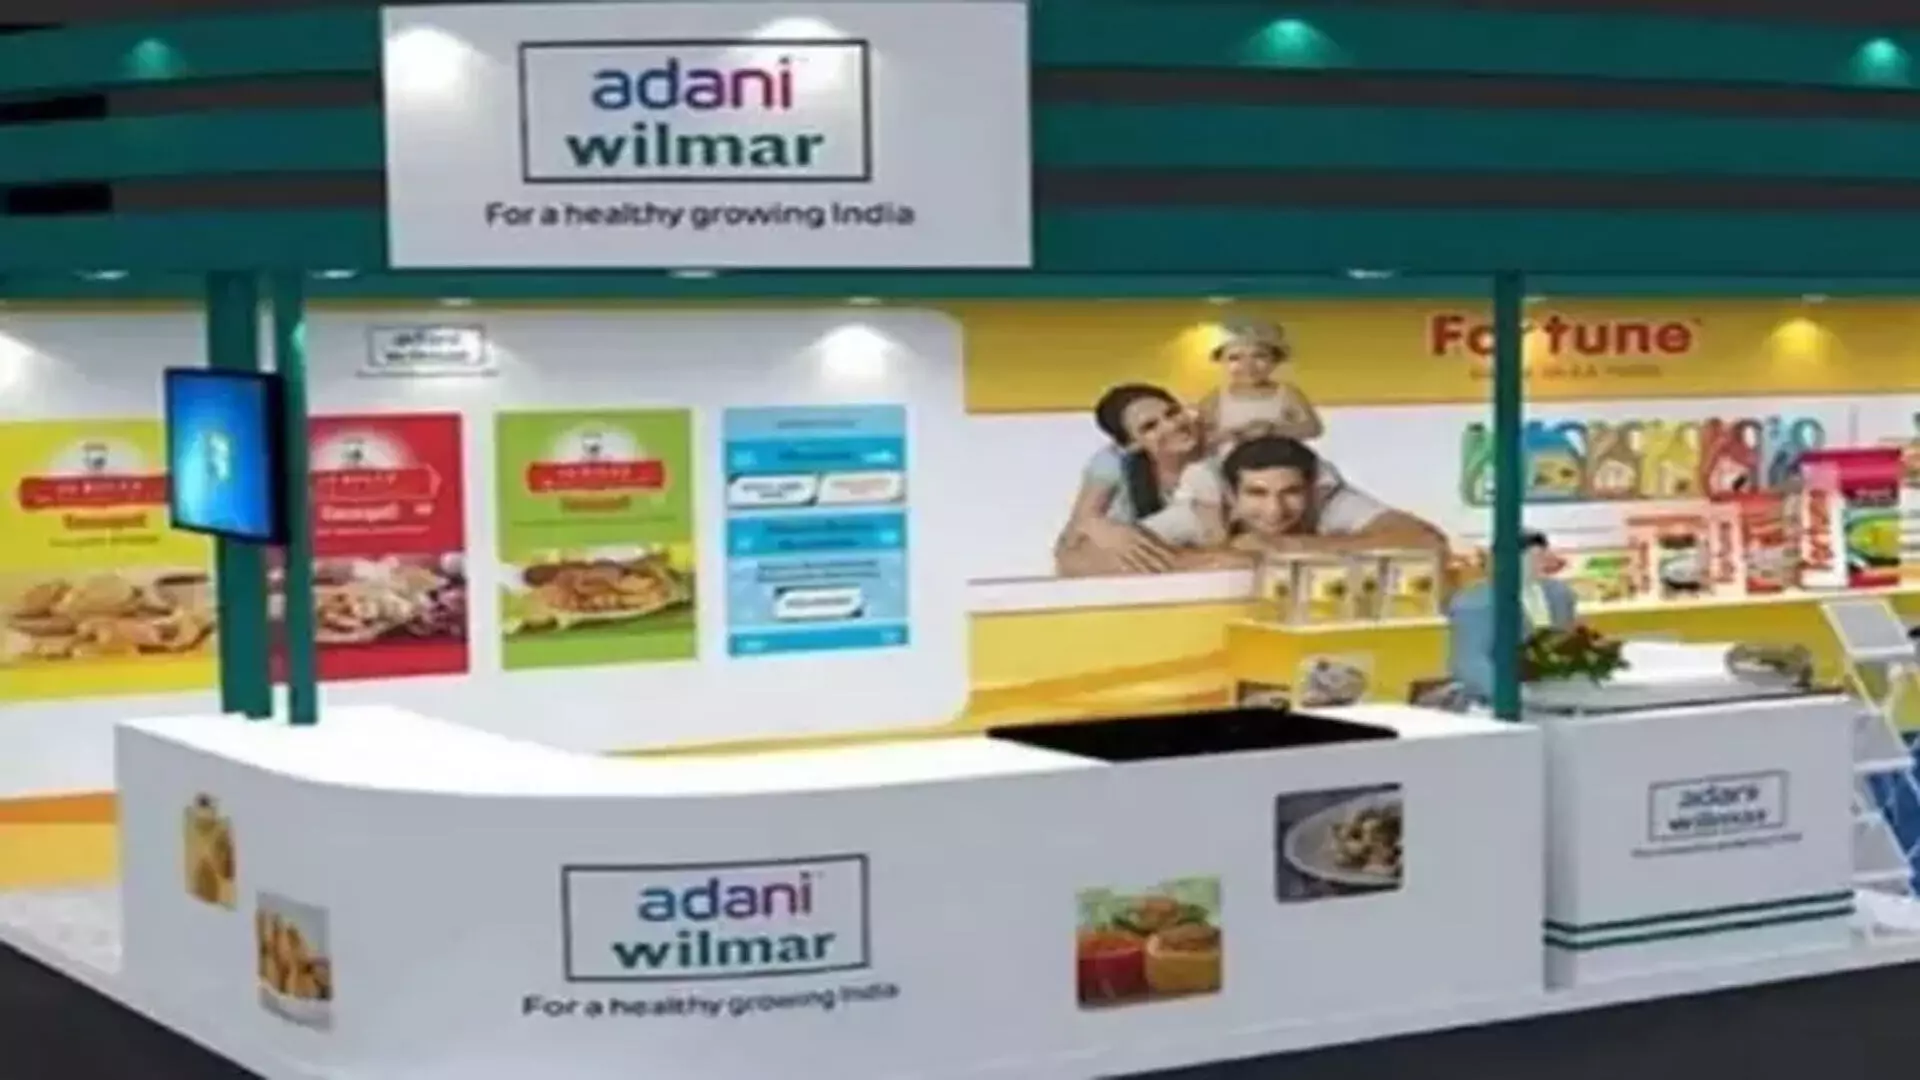 Adani Wilmar ने पहली तिमाही में 313 करोड़ रुपये का शुद्ध लाभ दर्ज किया